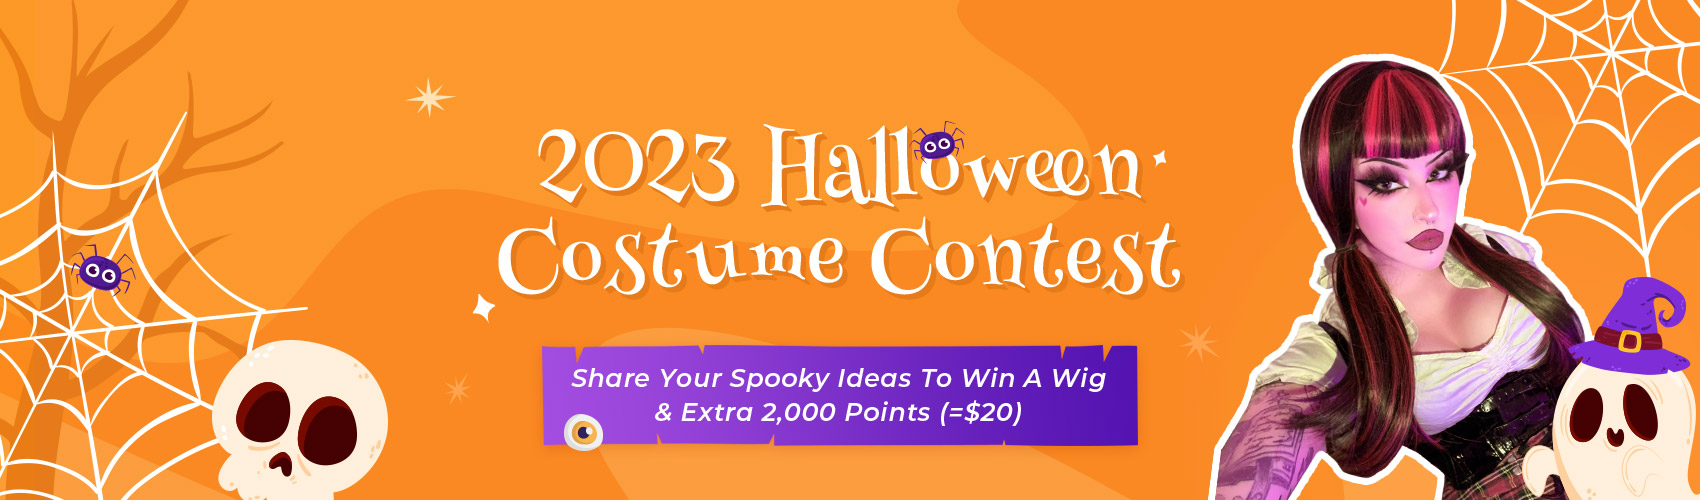 2023 Halloween Costume Contest